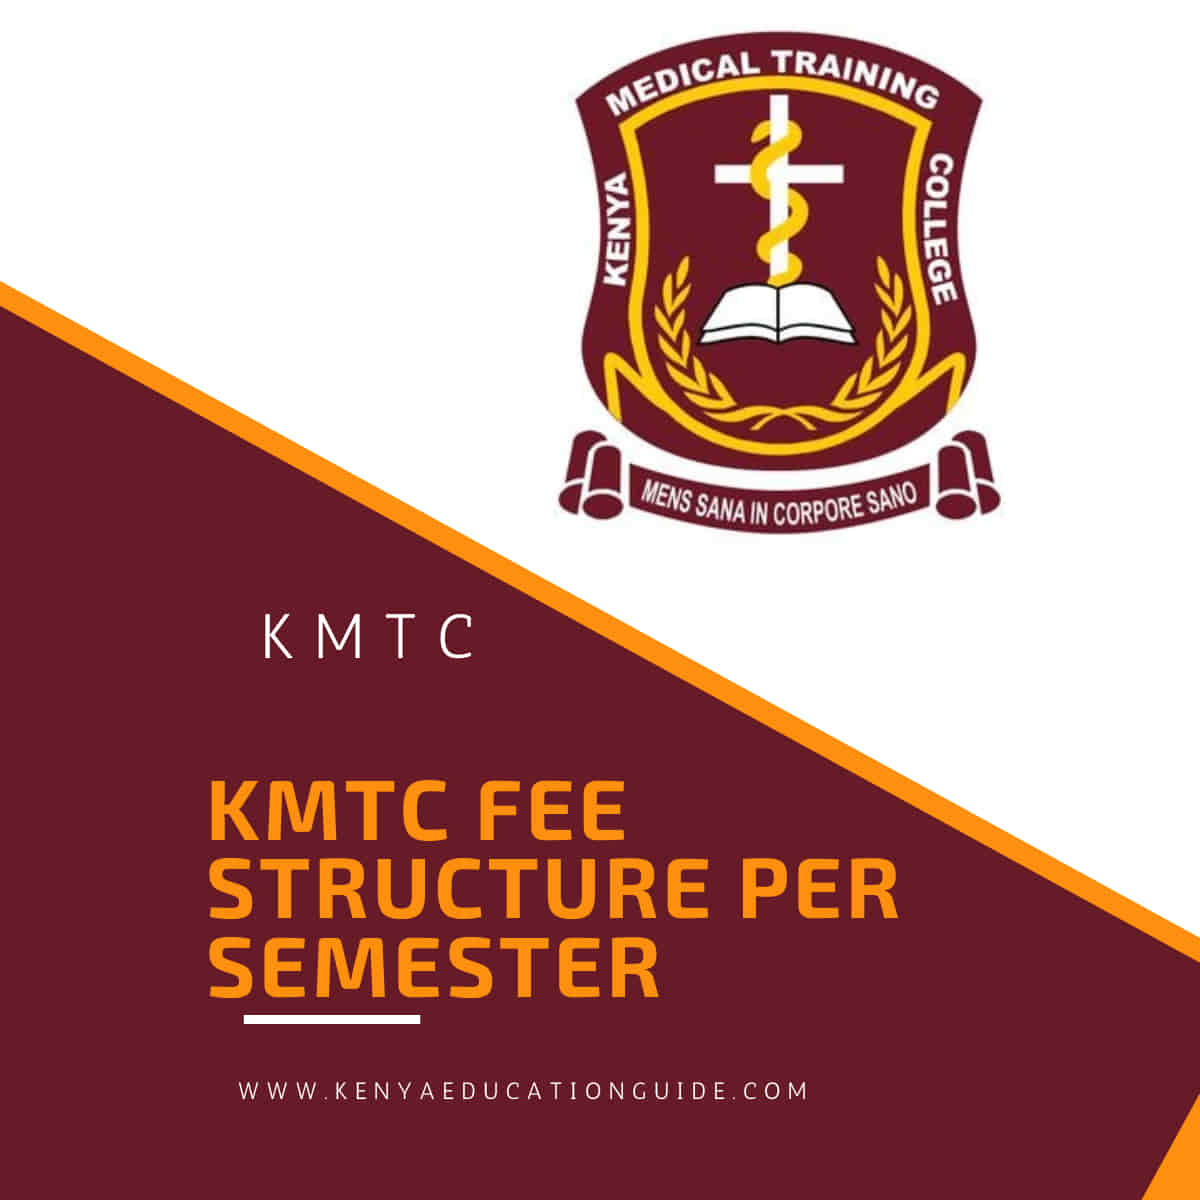 KMTC fee structure per semester